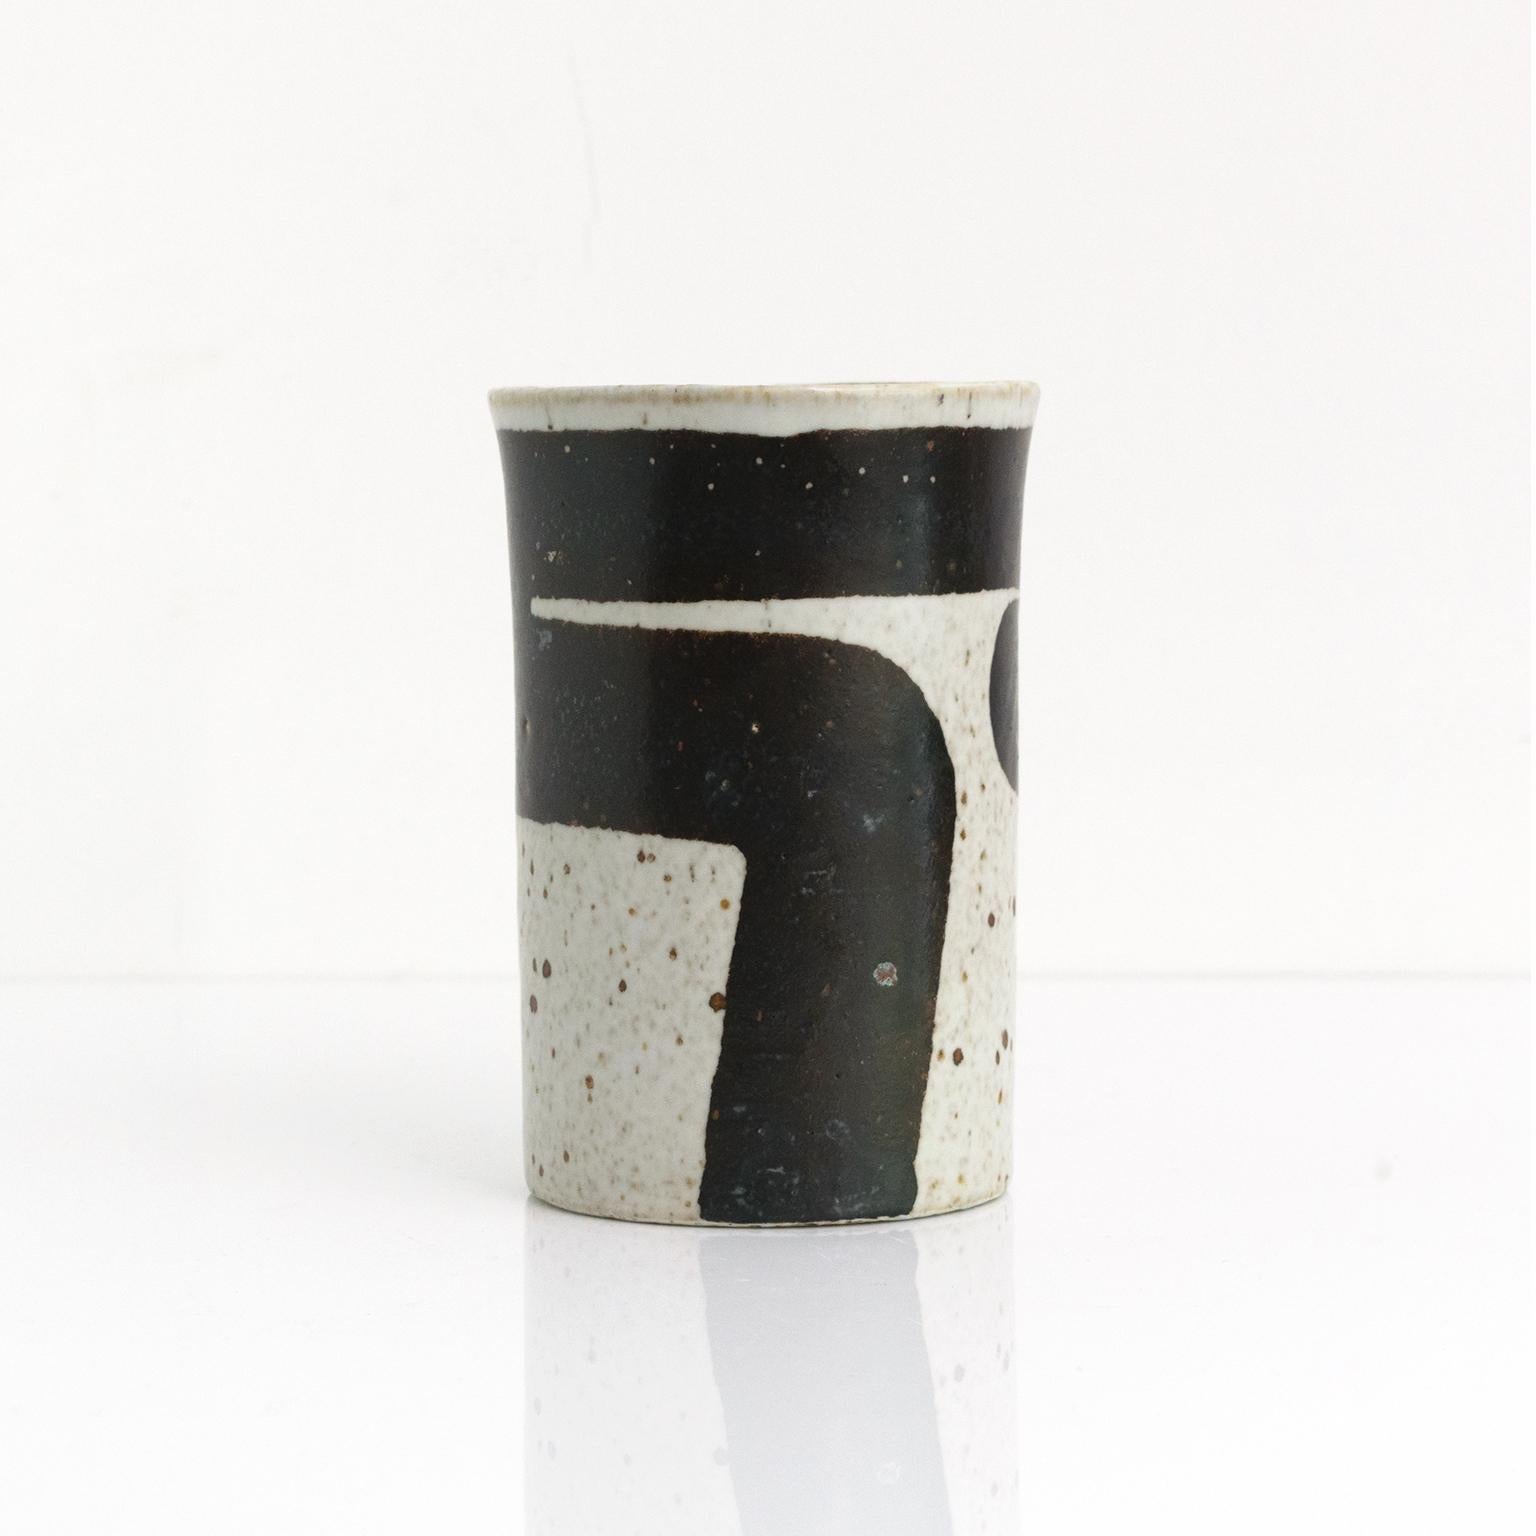 Inger Persson a conçu ce vase d'atelier en céramique au graphisme audacieux dans les années 1960 pour Rorstrand, en Suède. Le vase a une forme légèrement carrée, avec une bande de couleur brun foncé à noir peinte à la main sur un fond blanc cassé.